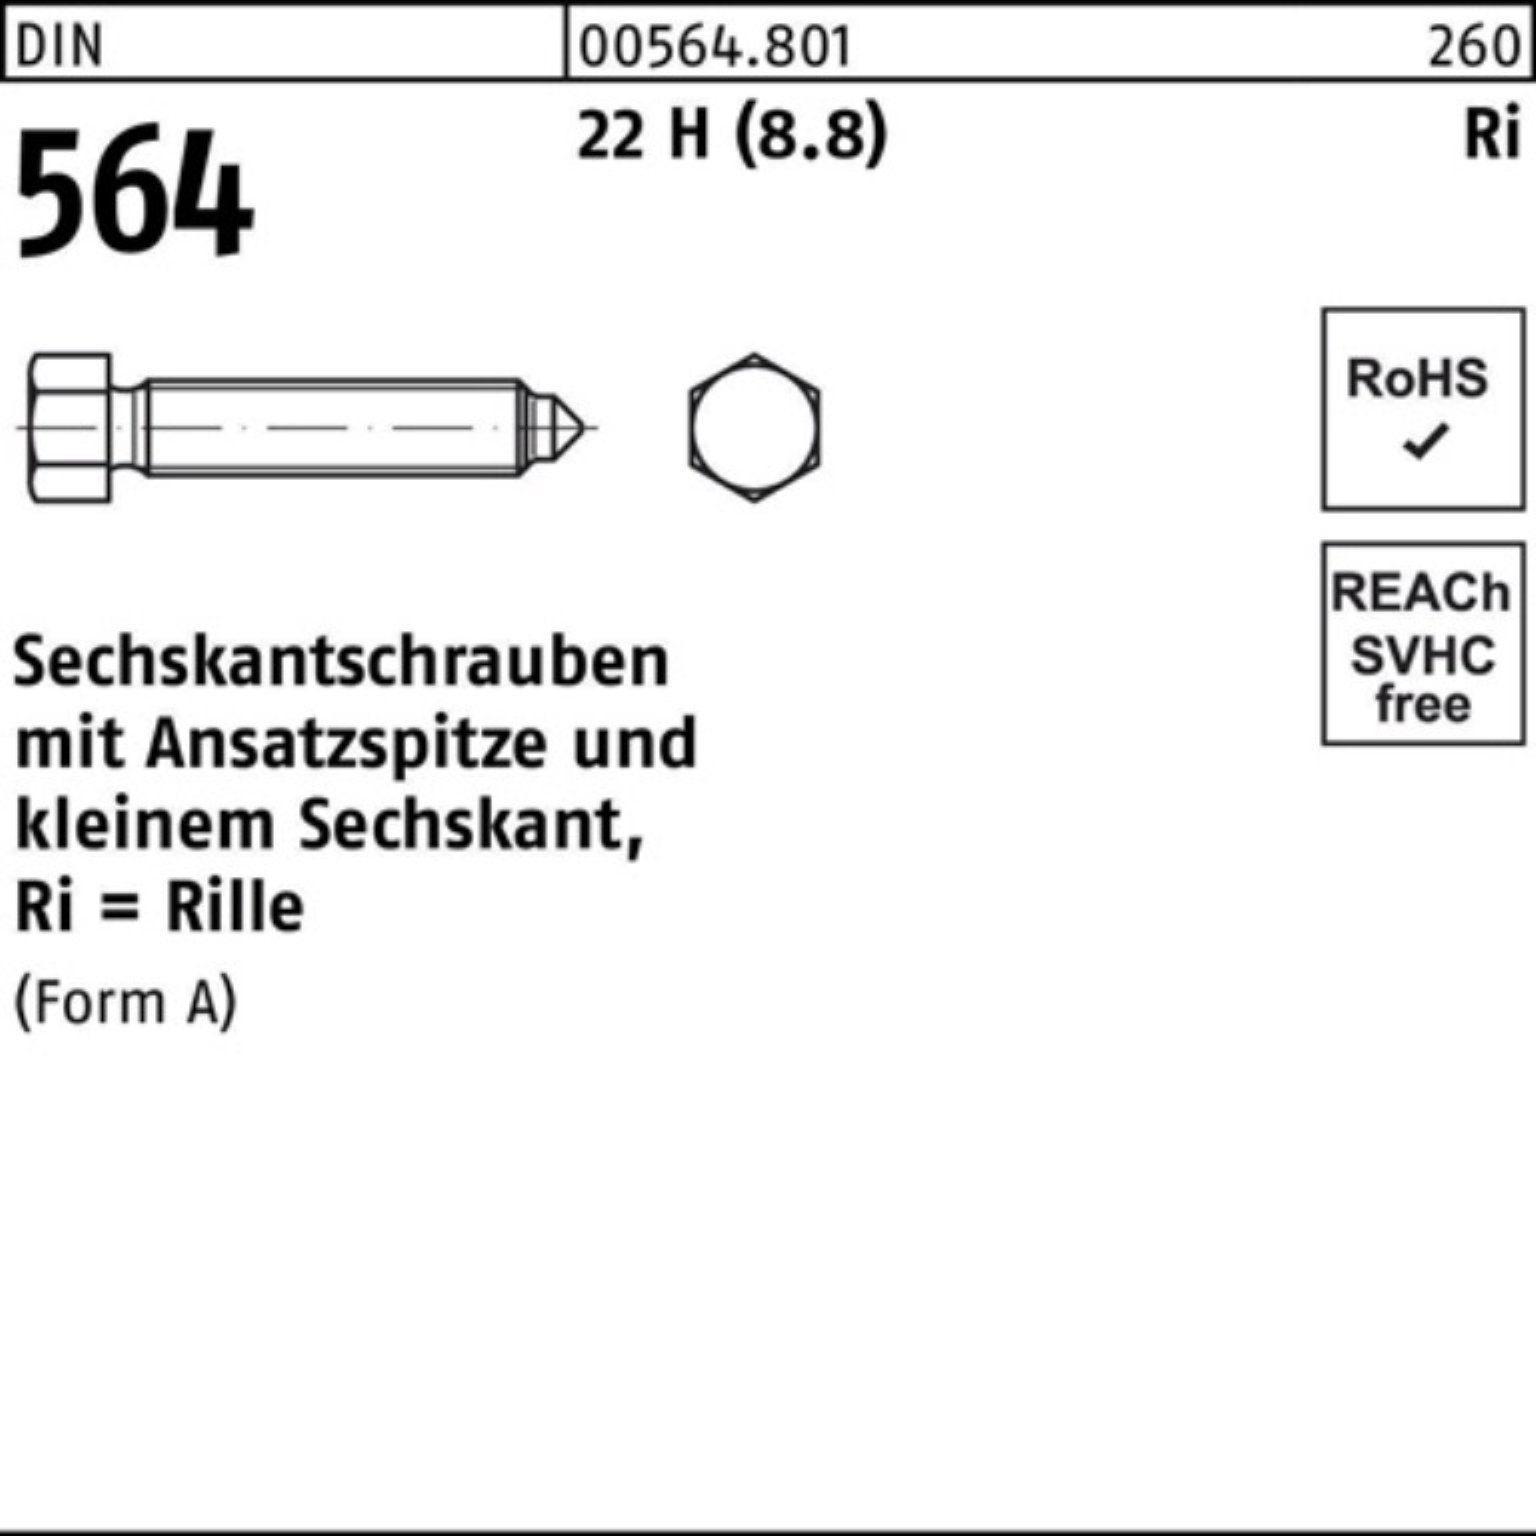 Reyher Sechskantschraube 100er Pack Sechskantschraube DIN 564 Ansatzspitze AM 12x 60 22 H (8.8)